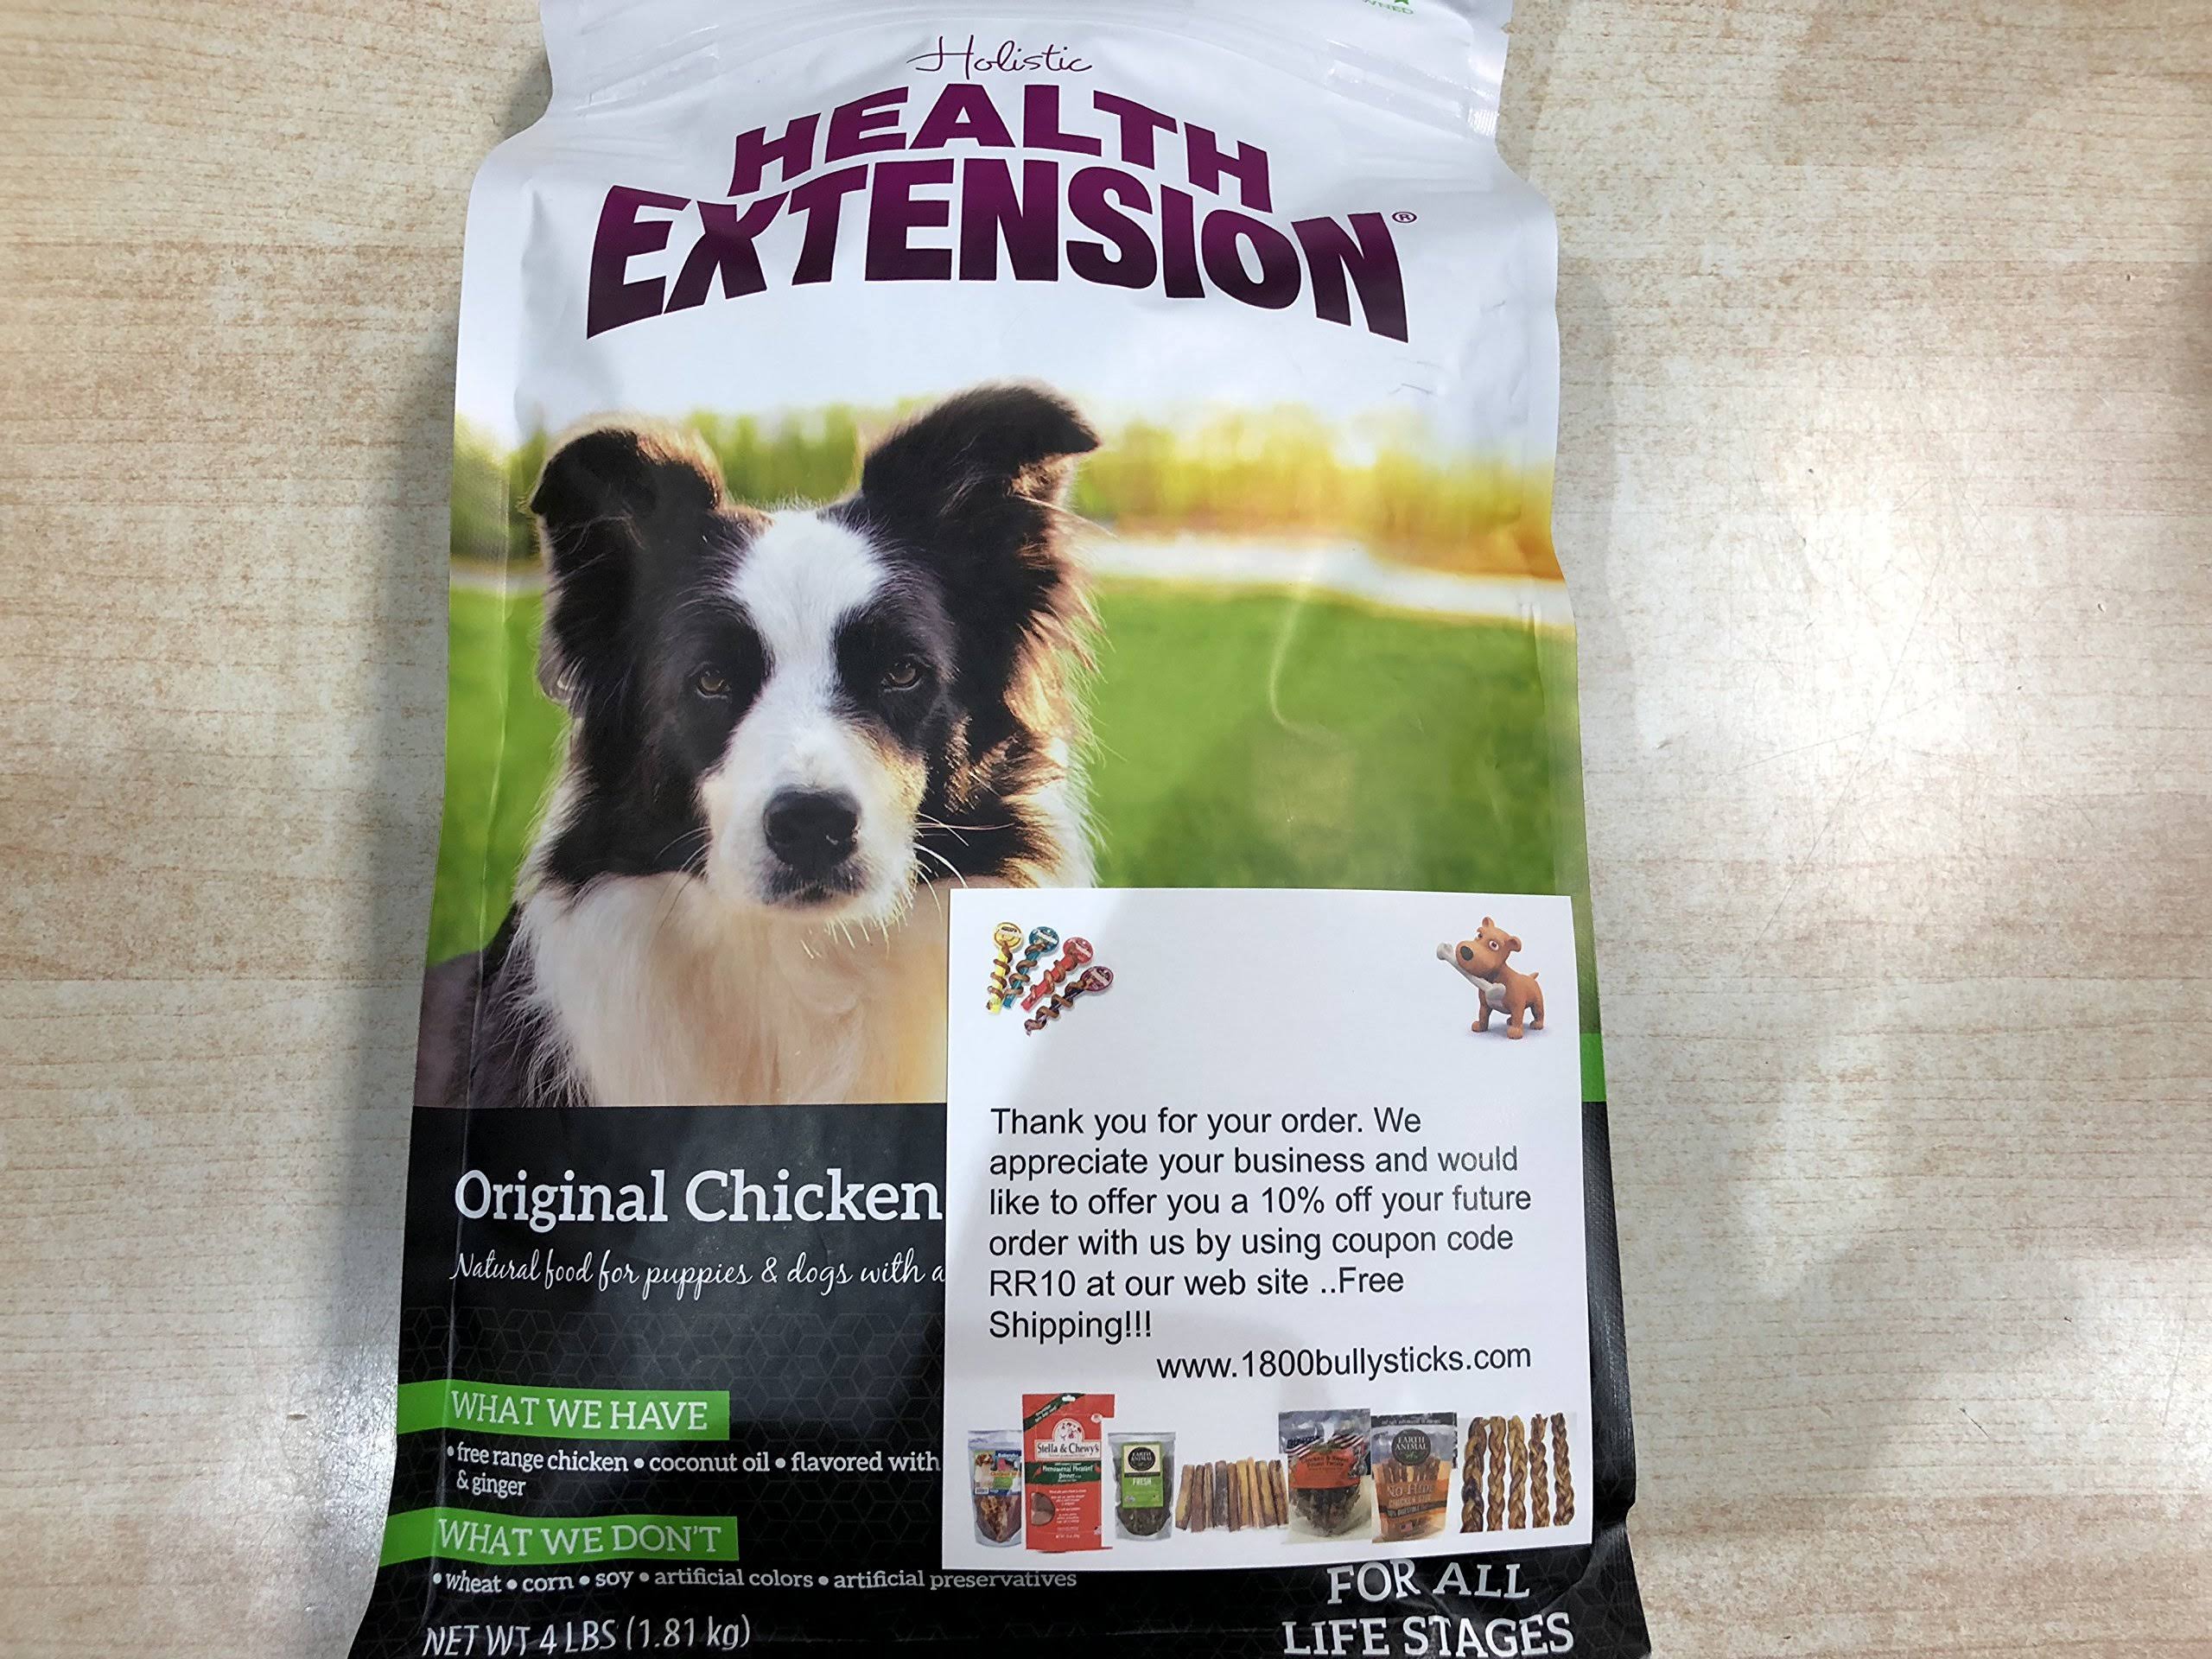 Health Extension Dog Food - Chicken